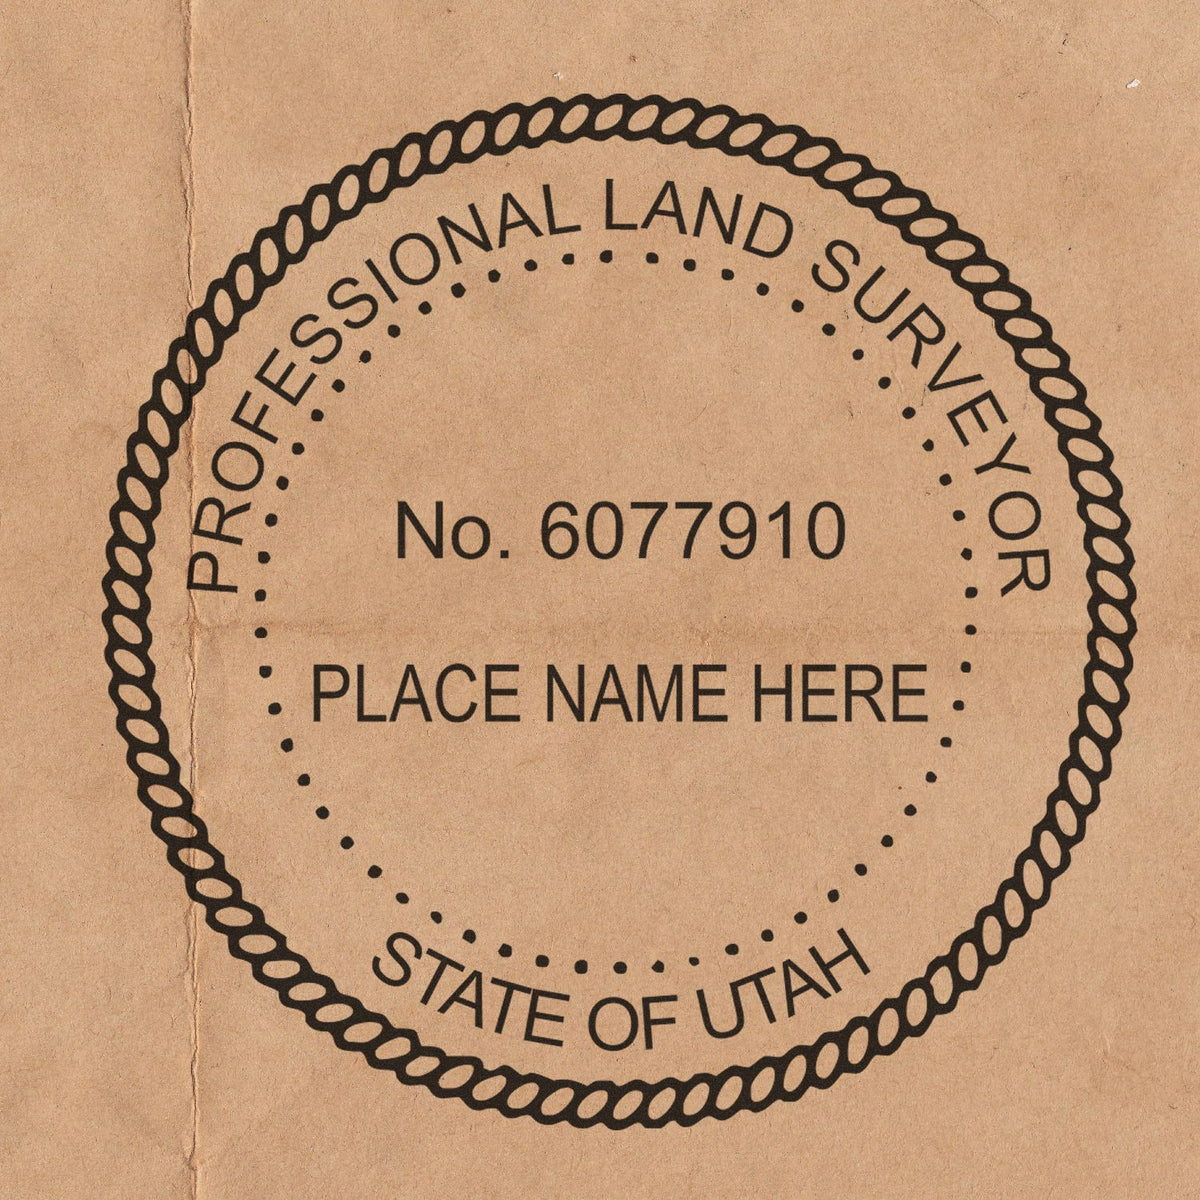 Utah Land Surveyor Seal Stamp In Use Photo